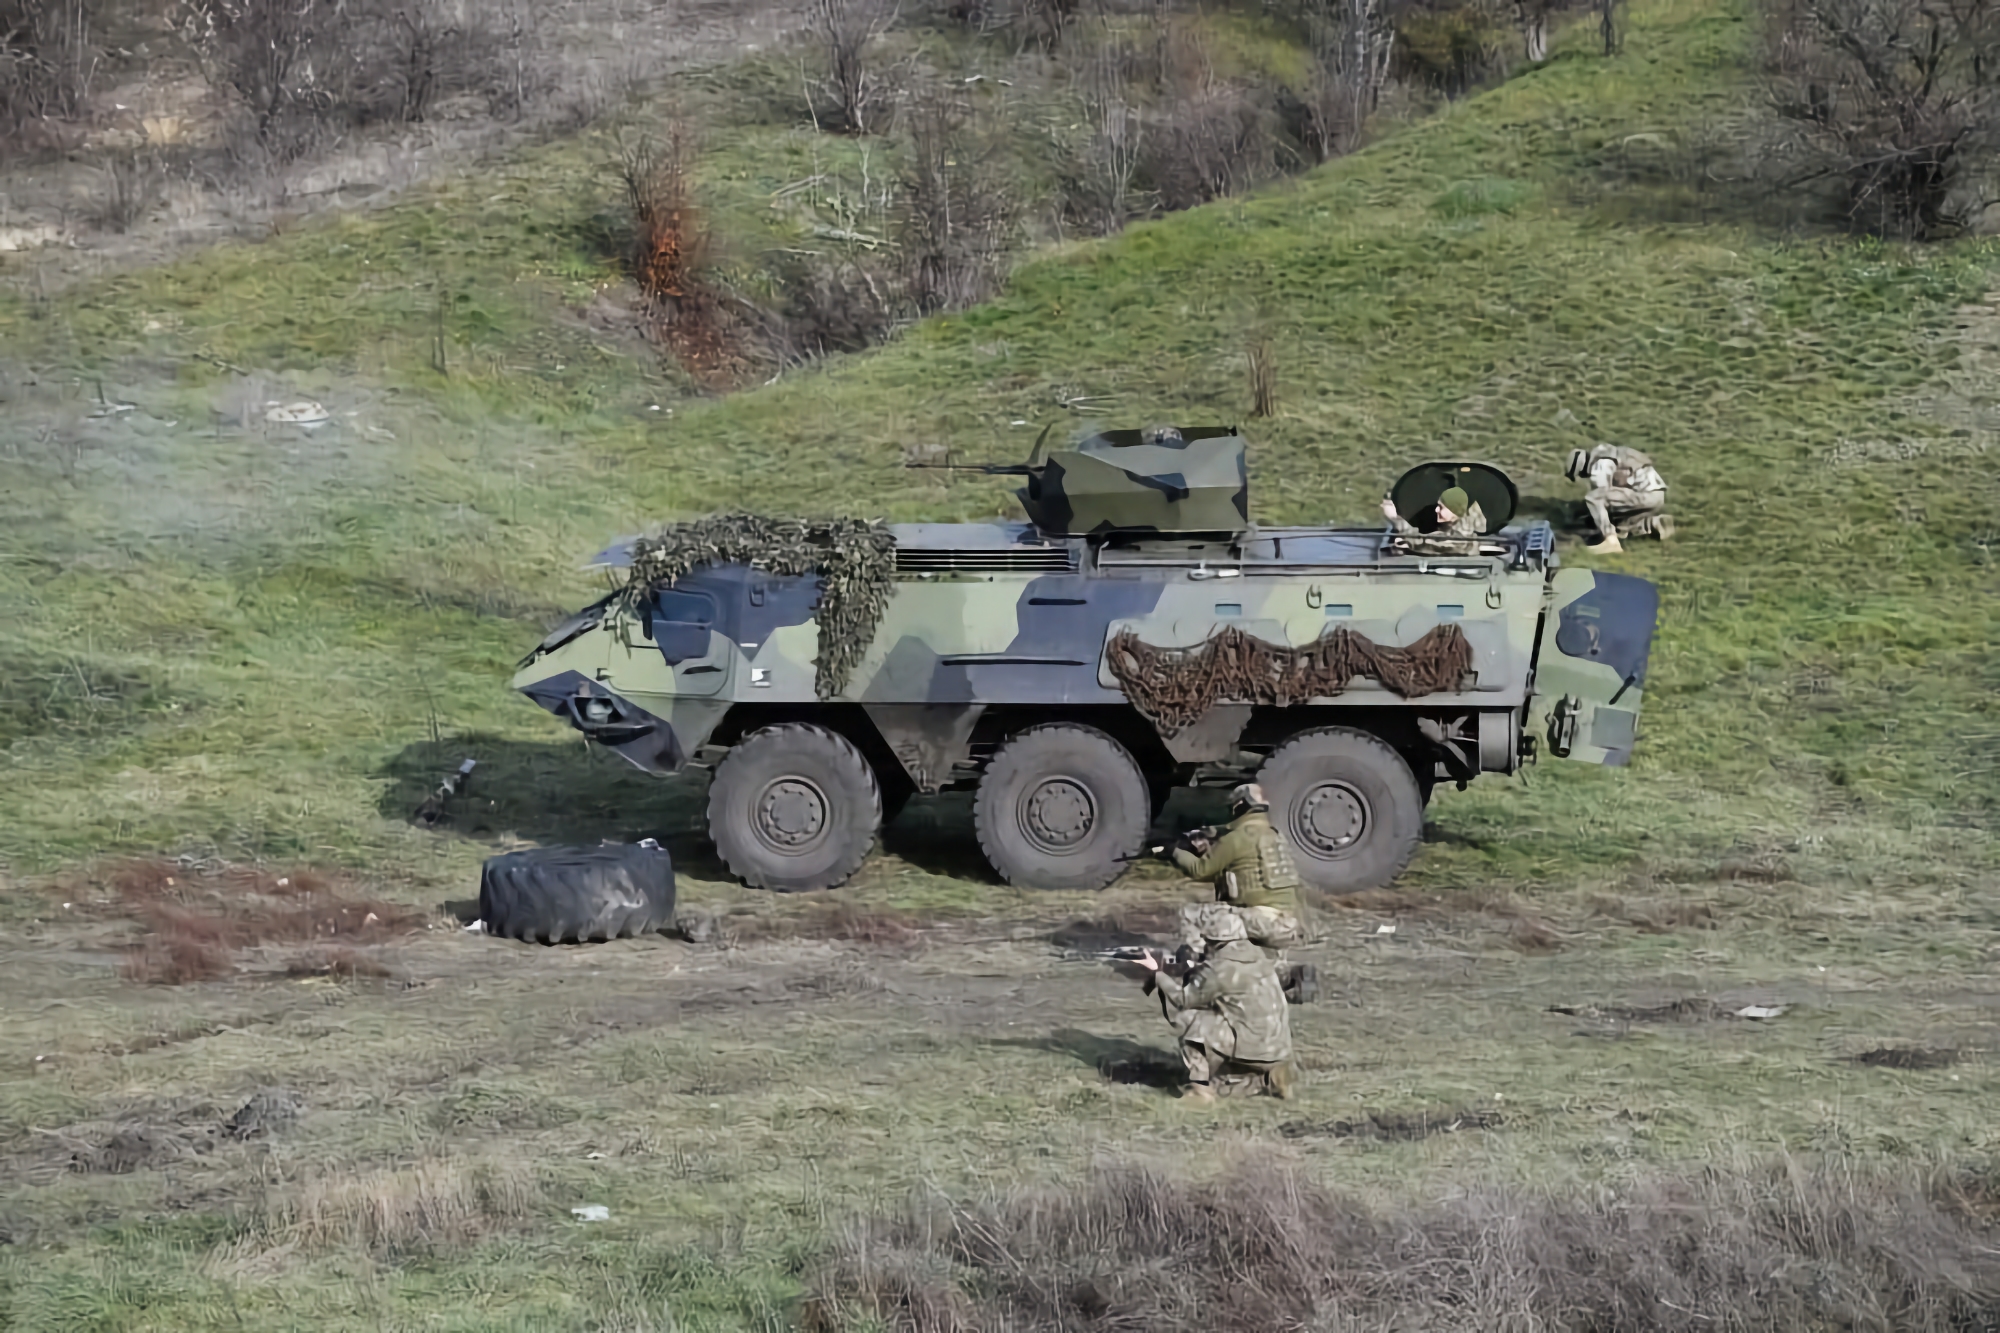 Die ukrainischen Marineinfanteristen verwenden finnische gepanzerte Mannschaftstransporter vom Typ Sisu XA-180, die über 6×6 Räder verfügen, eine Reichweite von bis zu 800 km haben und schwimmen können.